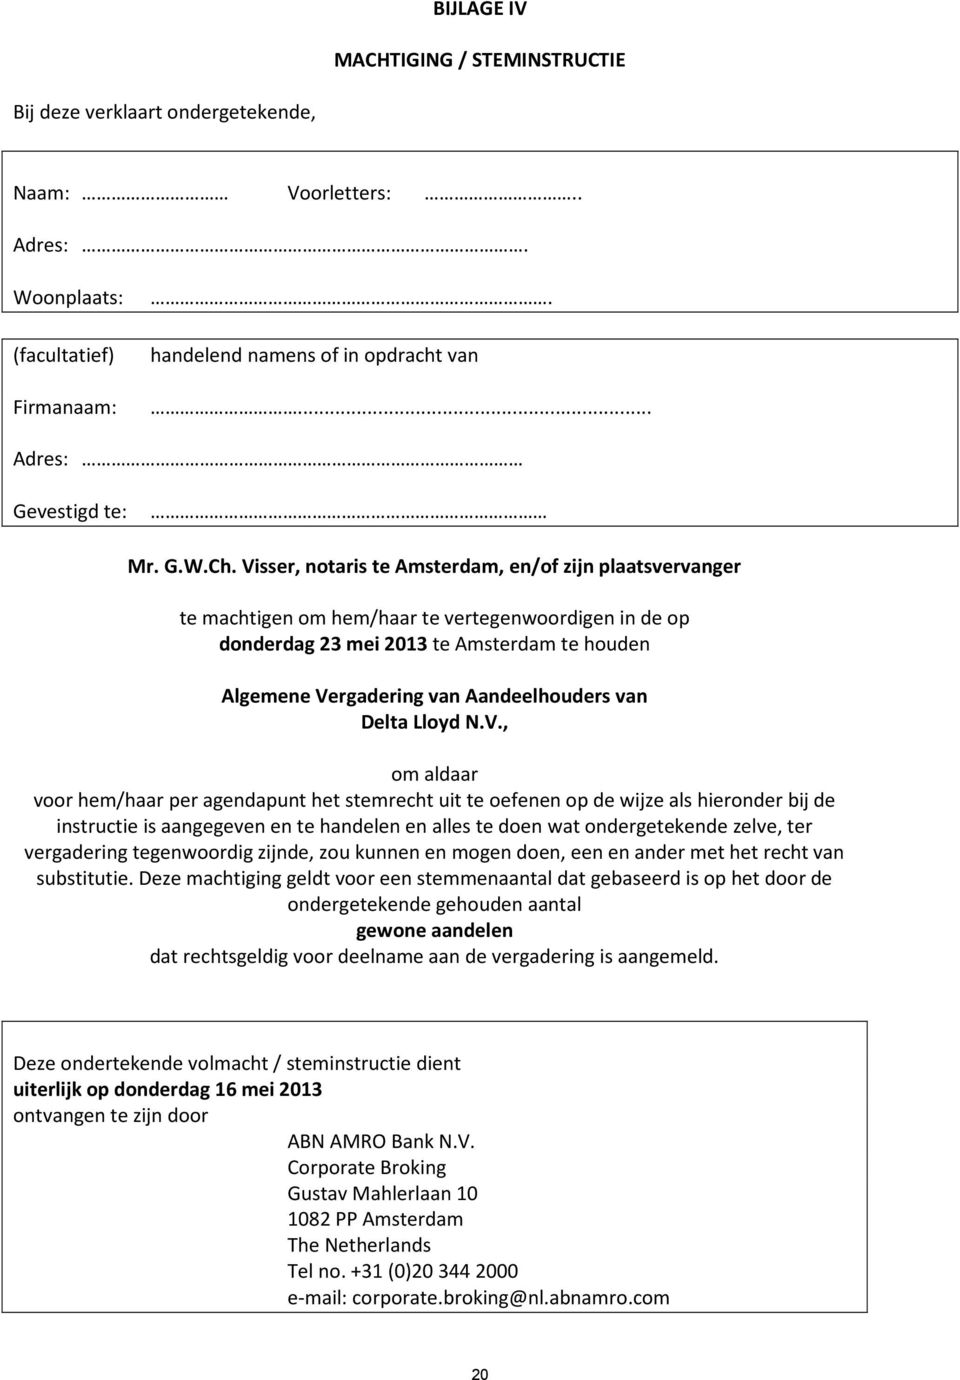 Visser, notaris te Amsterdam, en/of zijn plaatsvervanger te machtigen om hem/haar te vertegenwoordigen in de op donderdag 23 mei 2013 te Amsterdam te houden Algemene Vergadering van Aandeelhouders